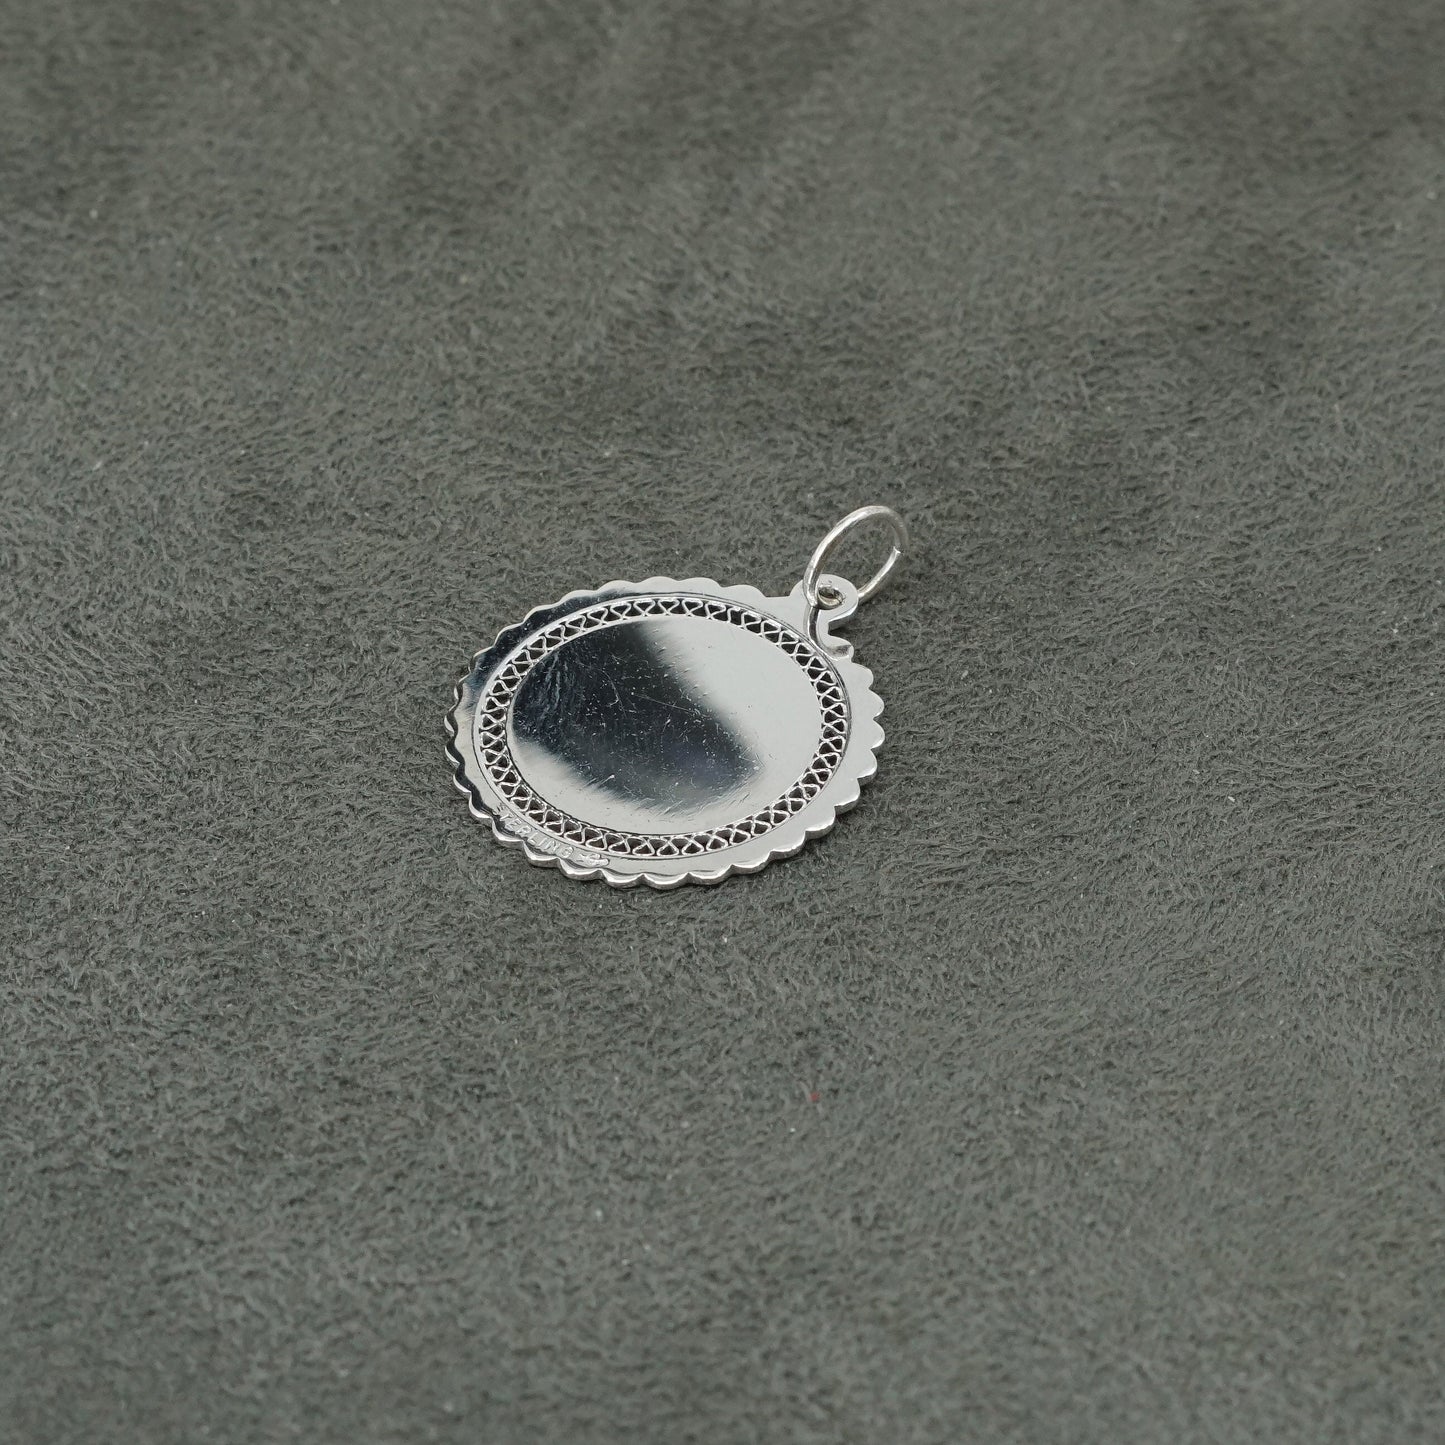 vtg Sterling silver handmade engraved "lovely 18" pendant, 925 tag charm